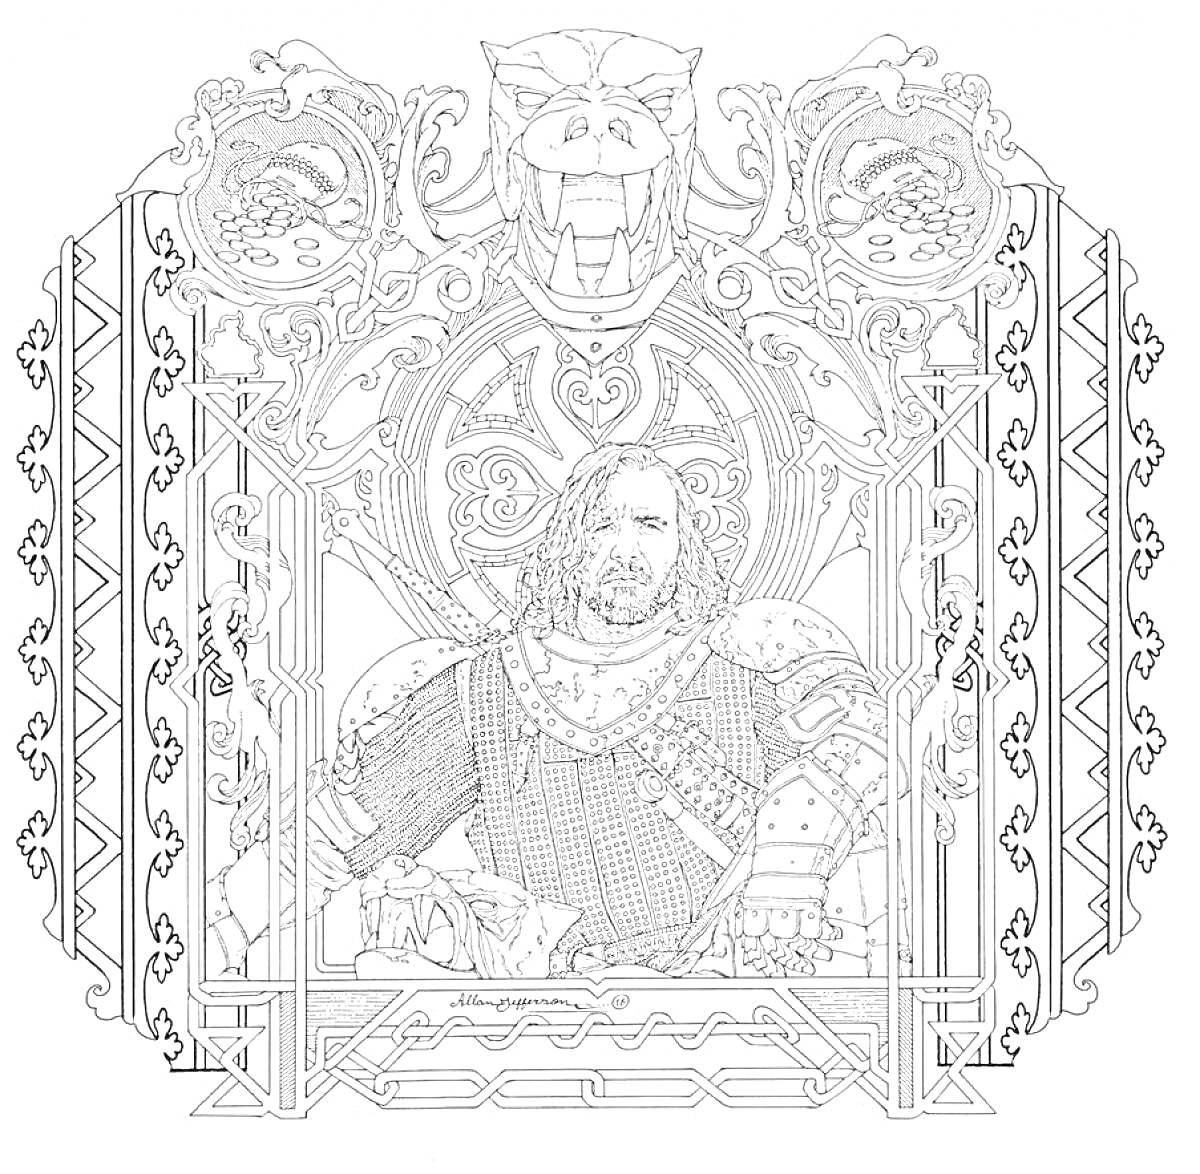 Главный герой в броне на фоне орнамента с волком и драконами